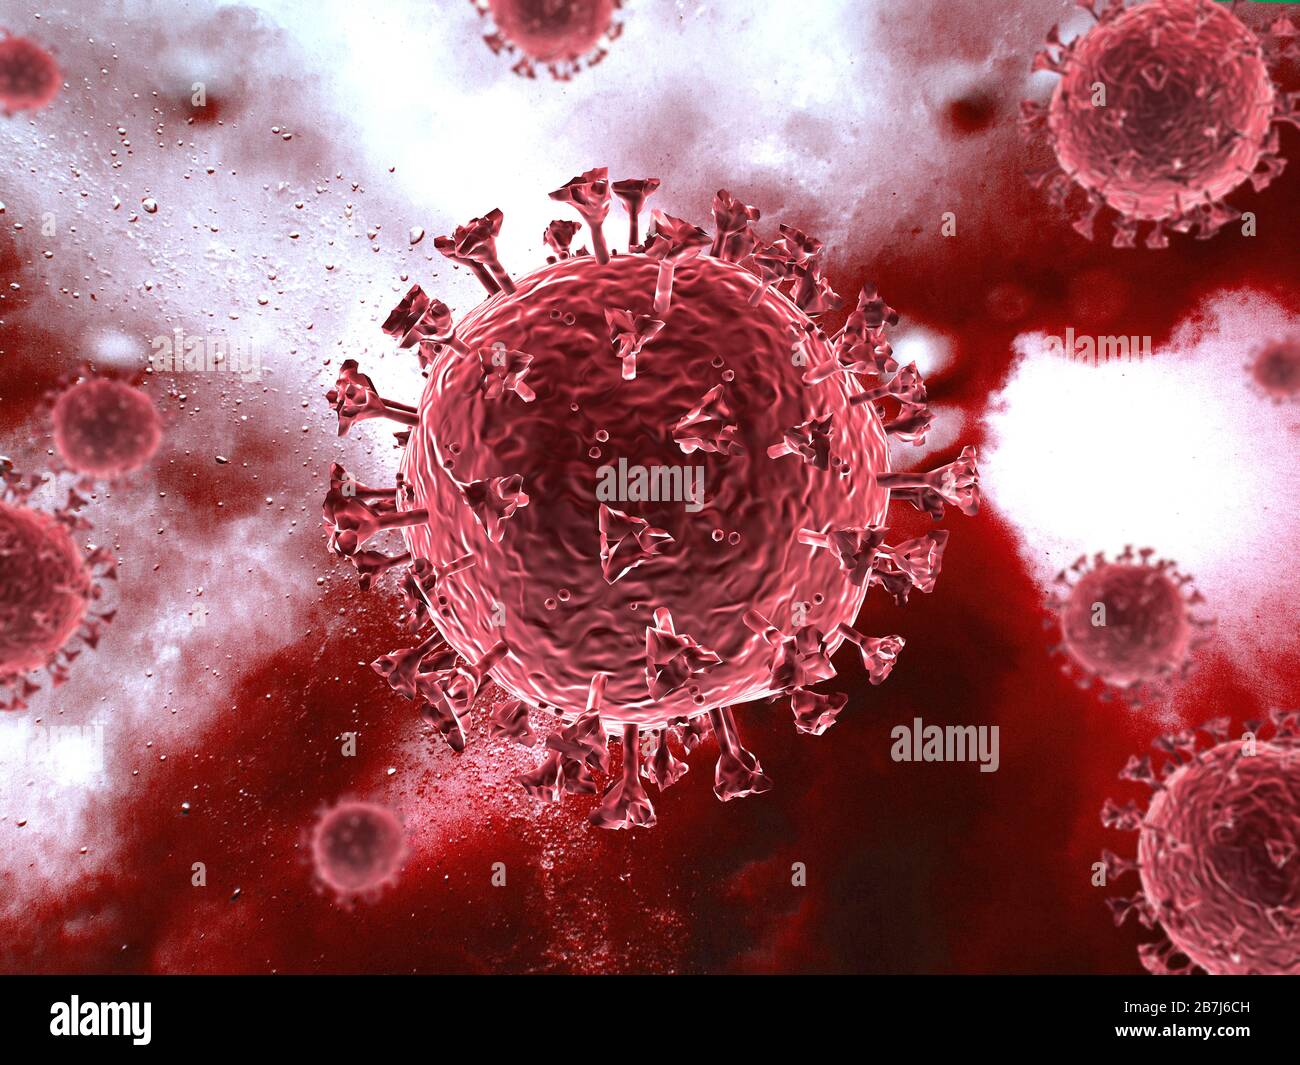 Corona-Virenszene mit detaillierter Struktur. Rote Motive auf rotem Hintergrund. 3D-Rendering. Stockfoto